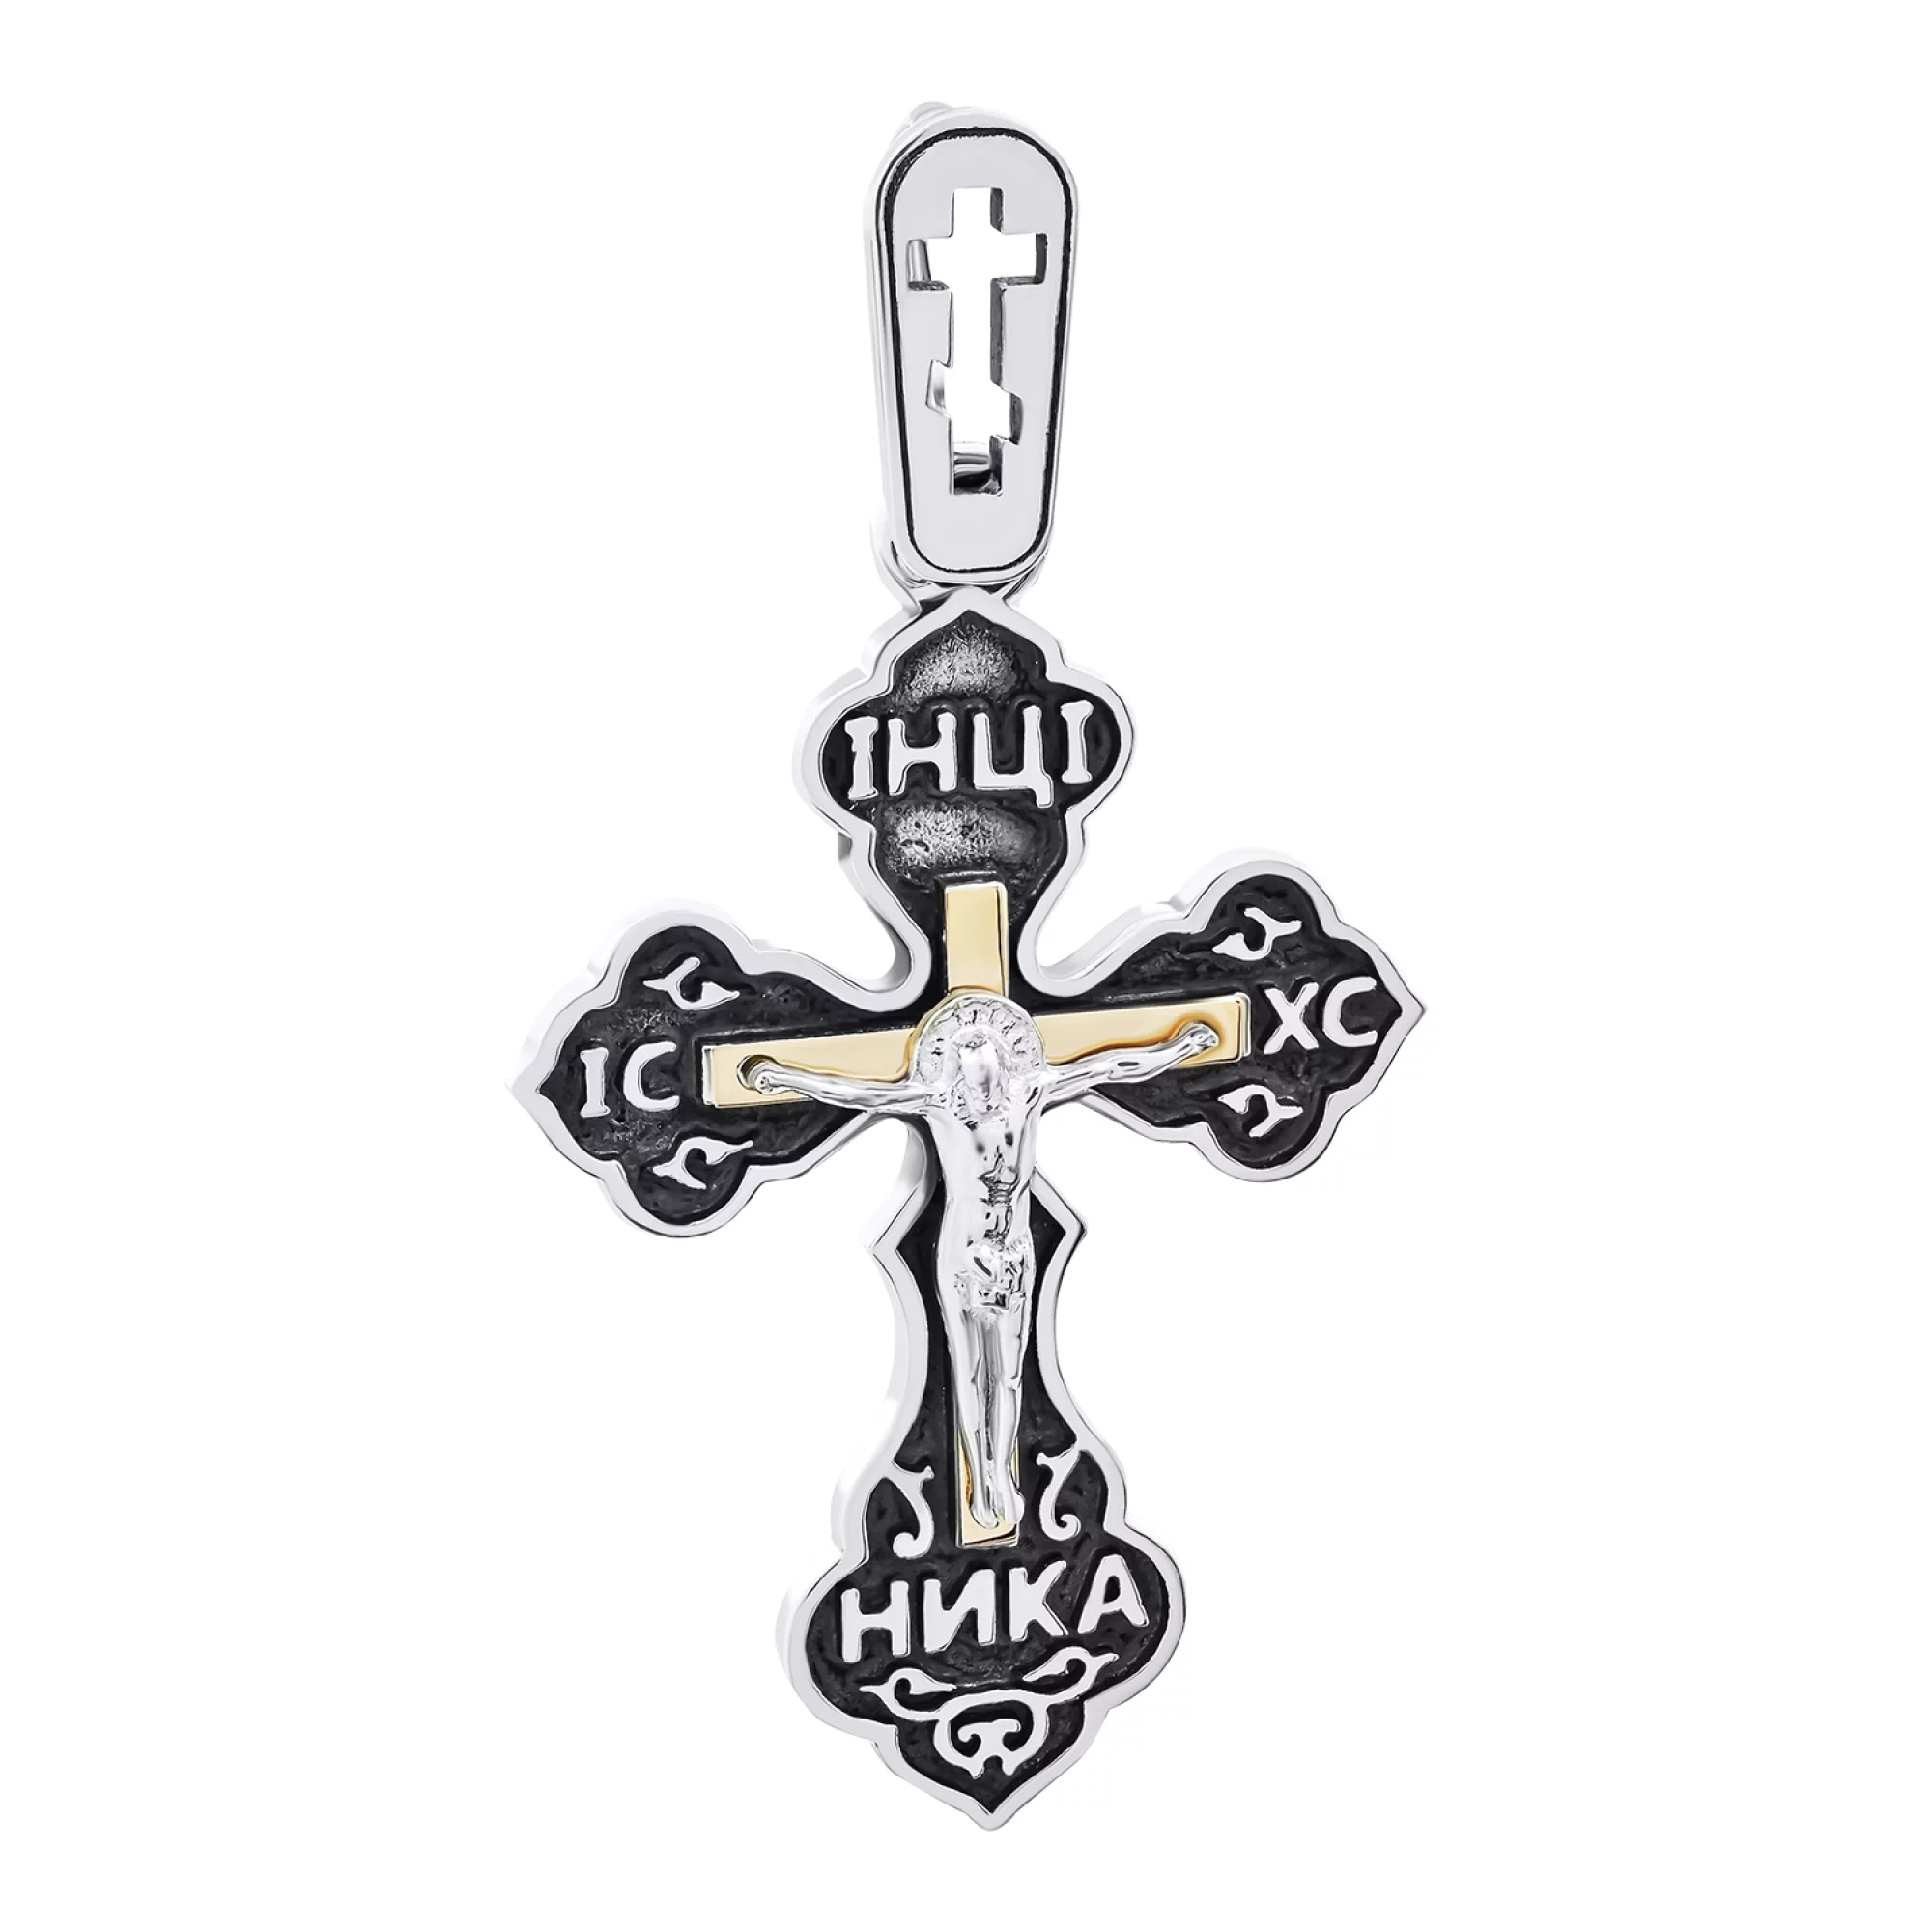 Нательный серебряный крестик с позолотой - 1520351 – изображение 1